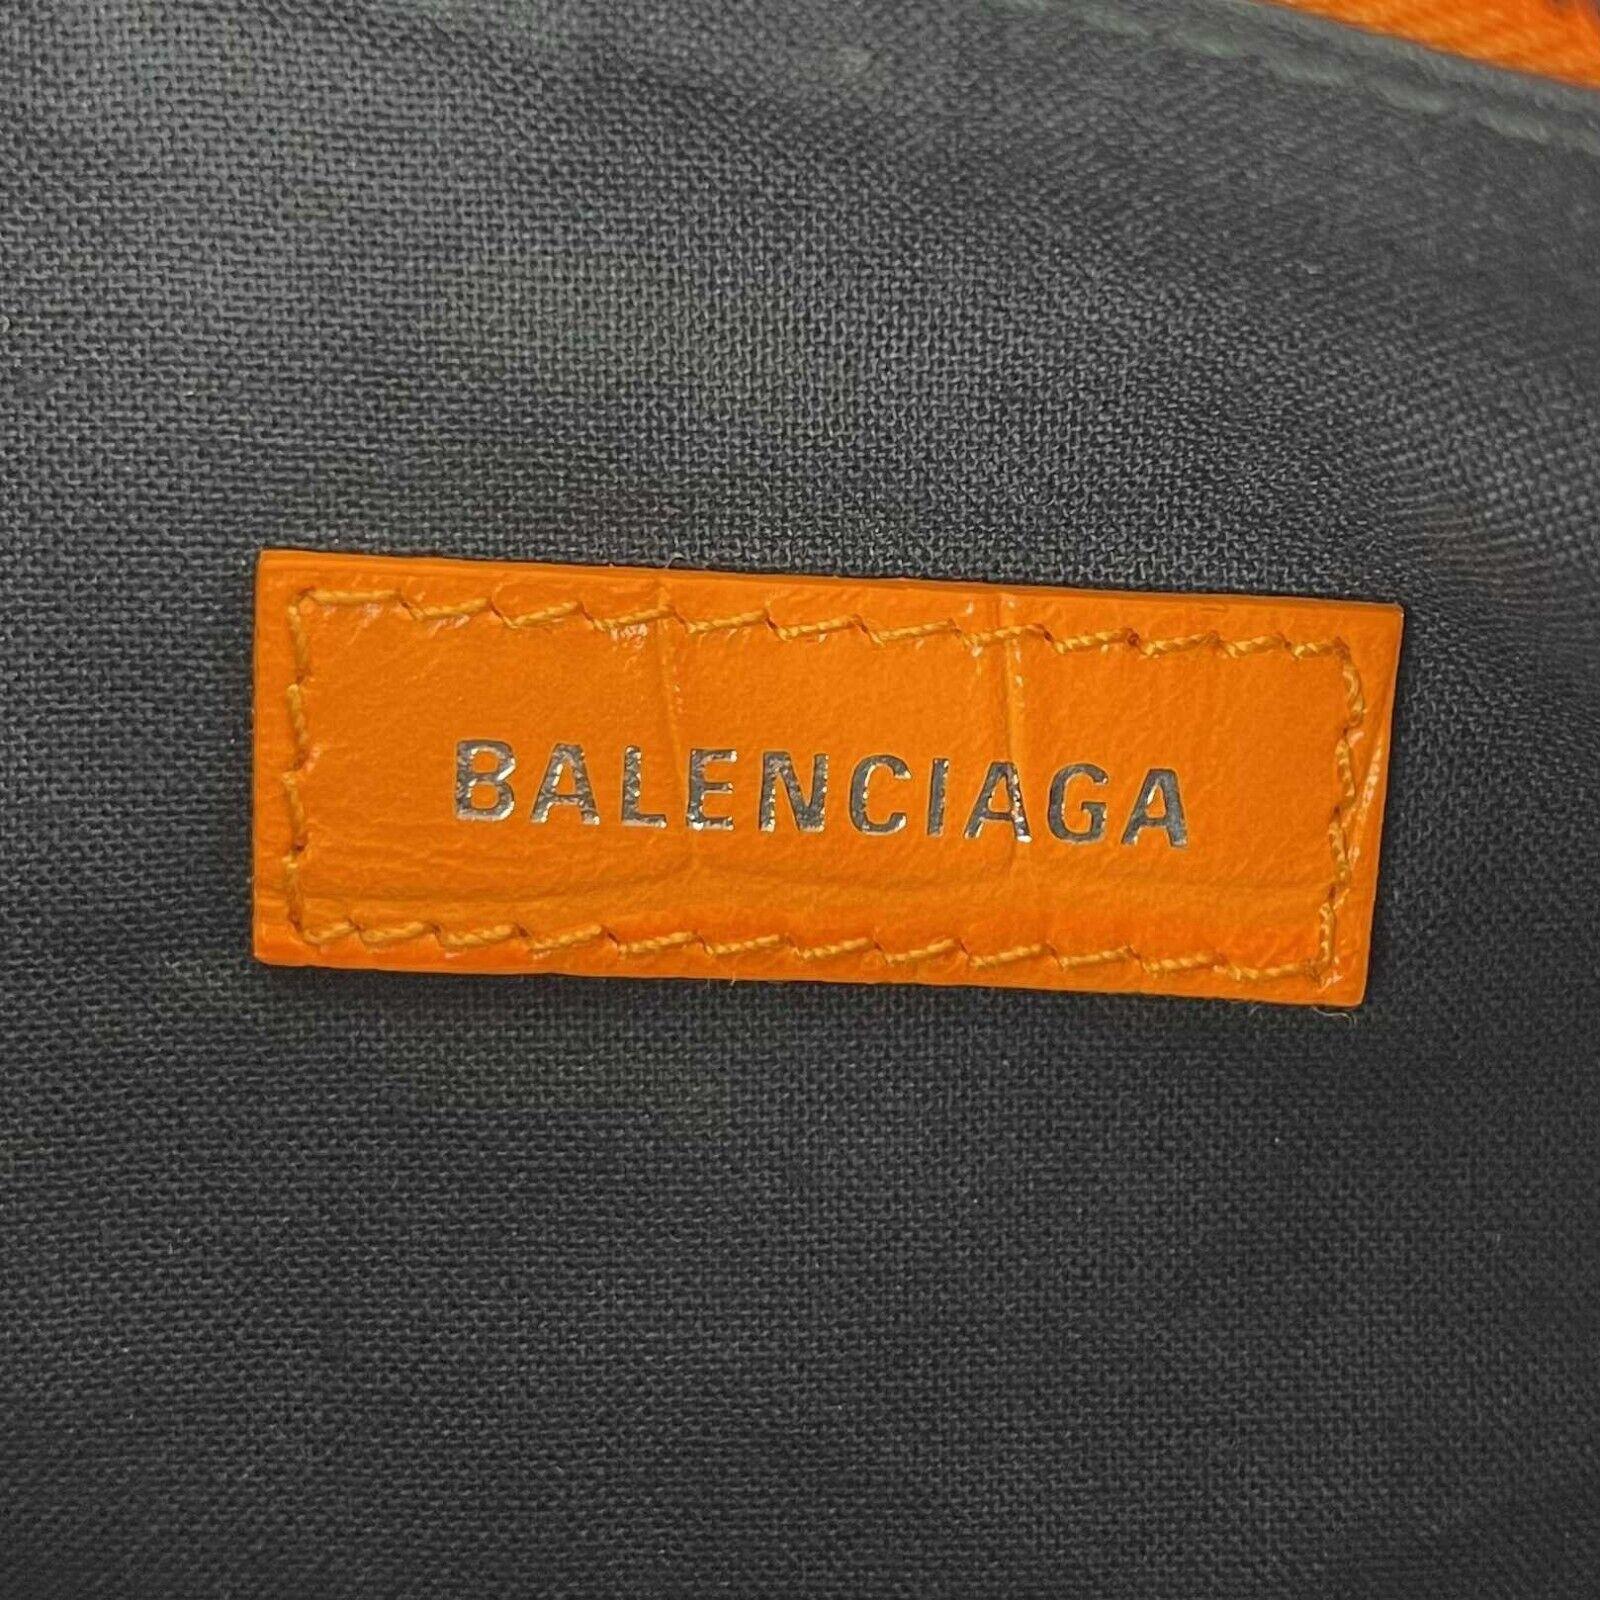 Balenciaga - New - Orange Le Cagole XS Shoulder Bag Crocodile Embossed Studded shoulder bag - Orange - Handbag

Description

Orange leather
Embossed crocodile effect
Stud embellishment
Aged hardware
Decorative buckle detail
Top zip